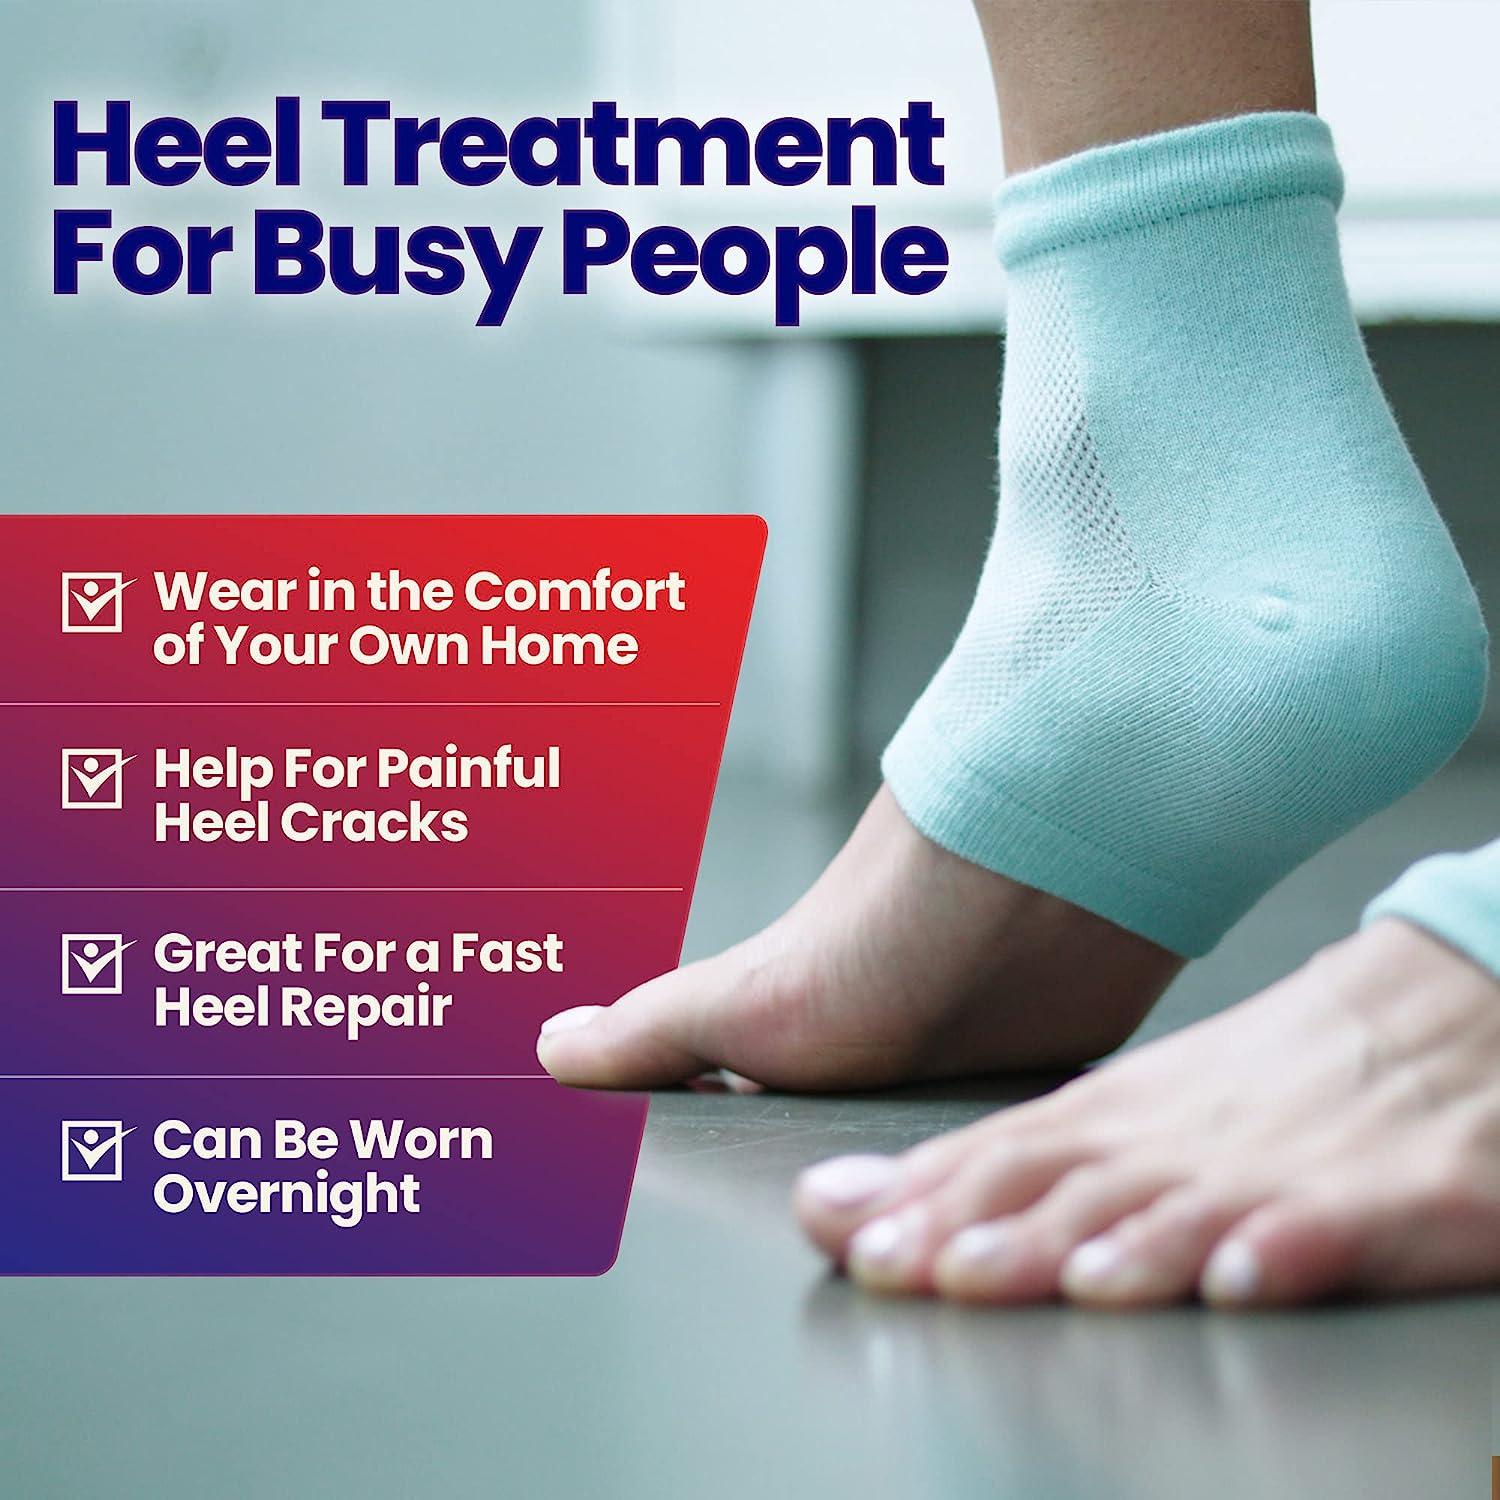 Happy Feet: How To Combat Dry Skin & Cracked Heels - NZ Herald